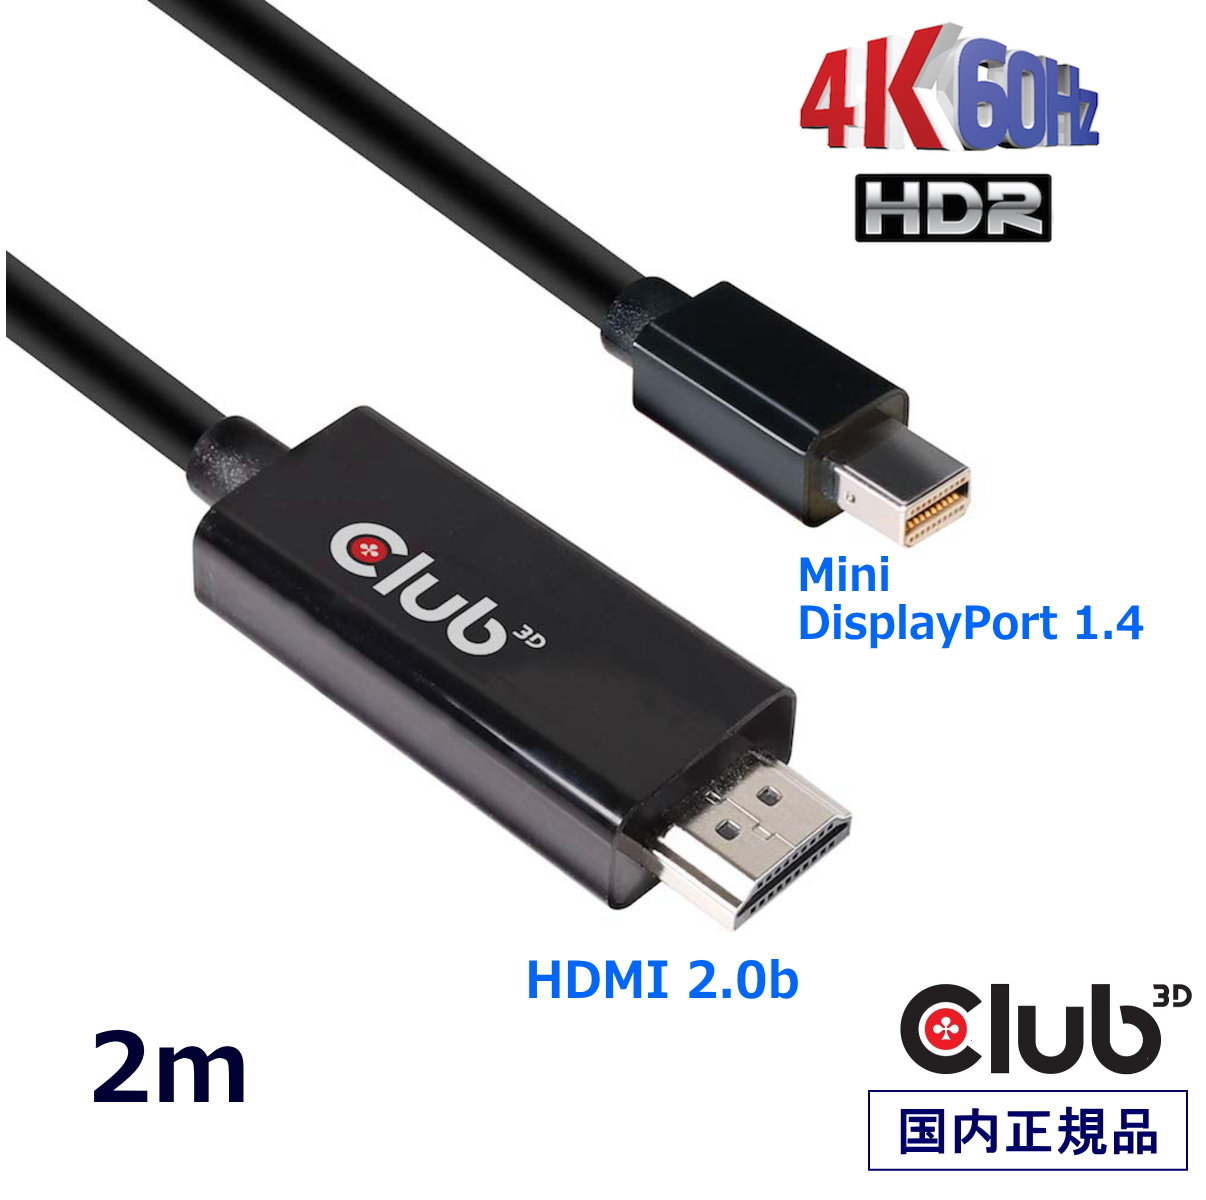 国内正規品 Club3D Mini DisplayPort 1.4 to HDMI 2.0b HDR（ハイダイナミックレンジ）対応 4K 60Hz ディスプレイ 変換アダプタ 2m ケーブル(CAC-1182)